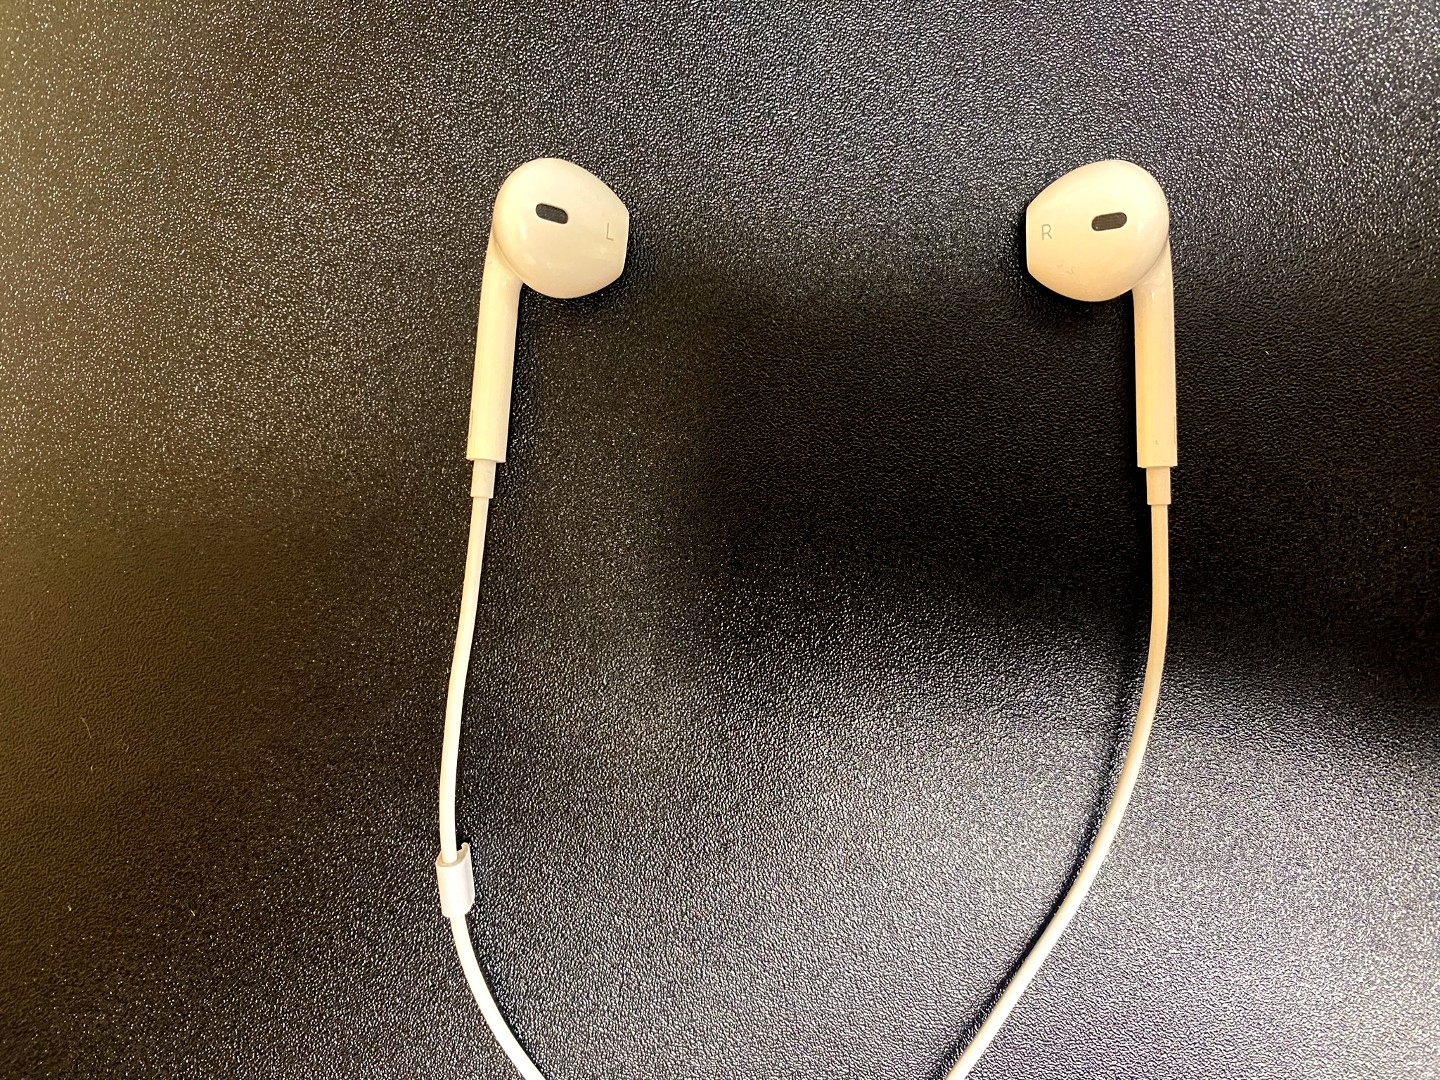 Earbud headphones